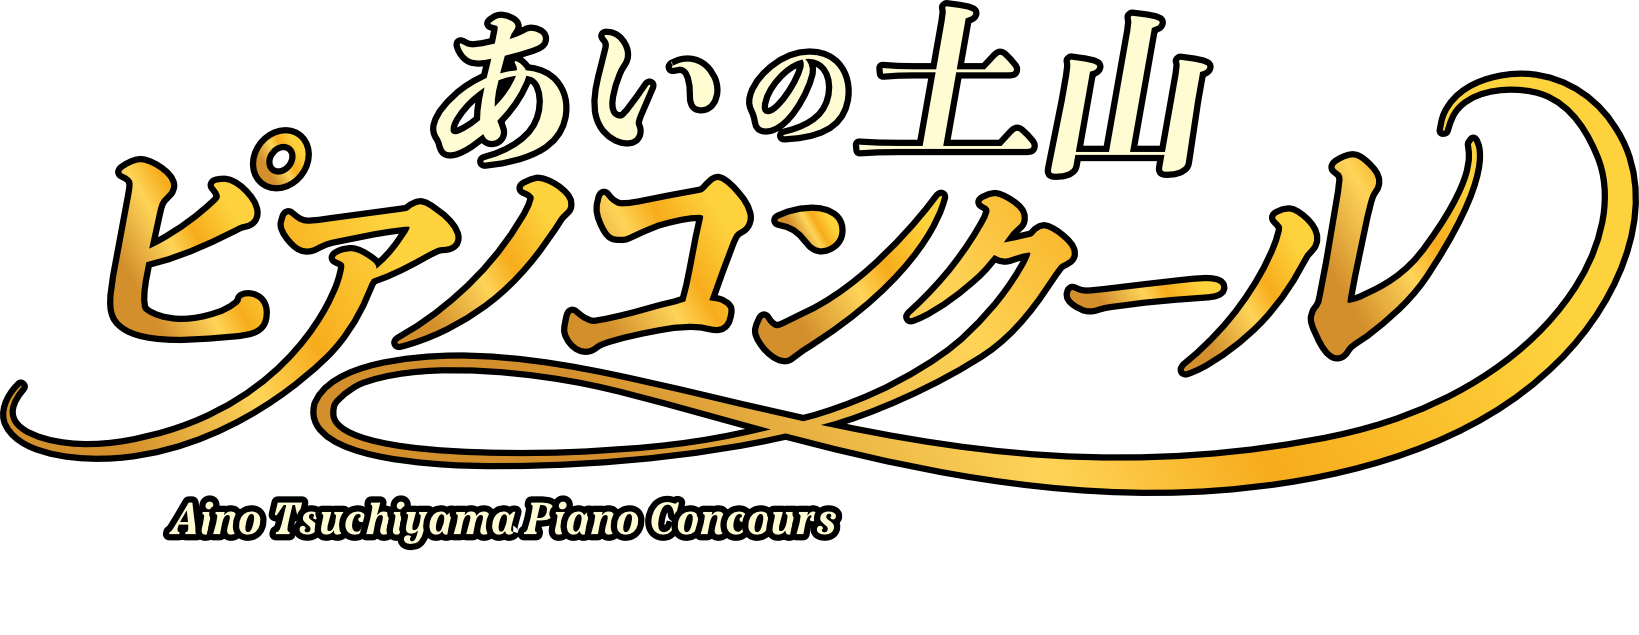 あいの土山ピアノコンクール